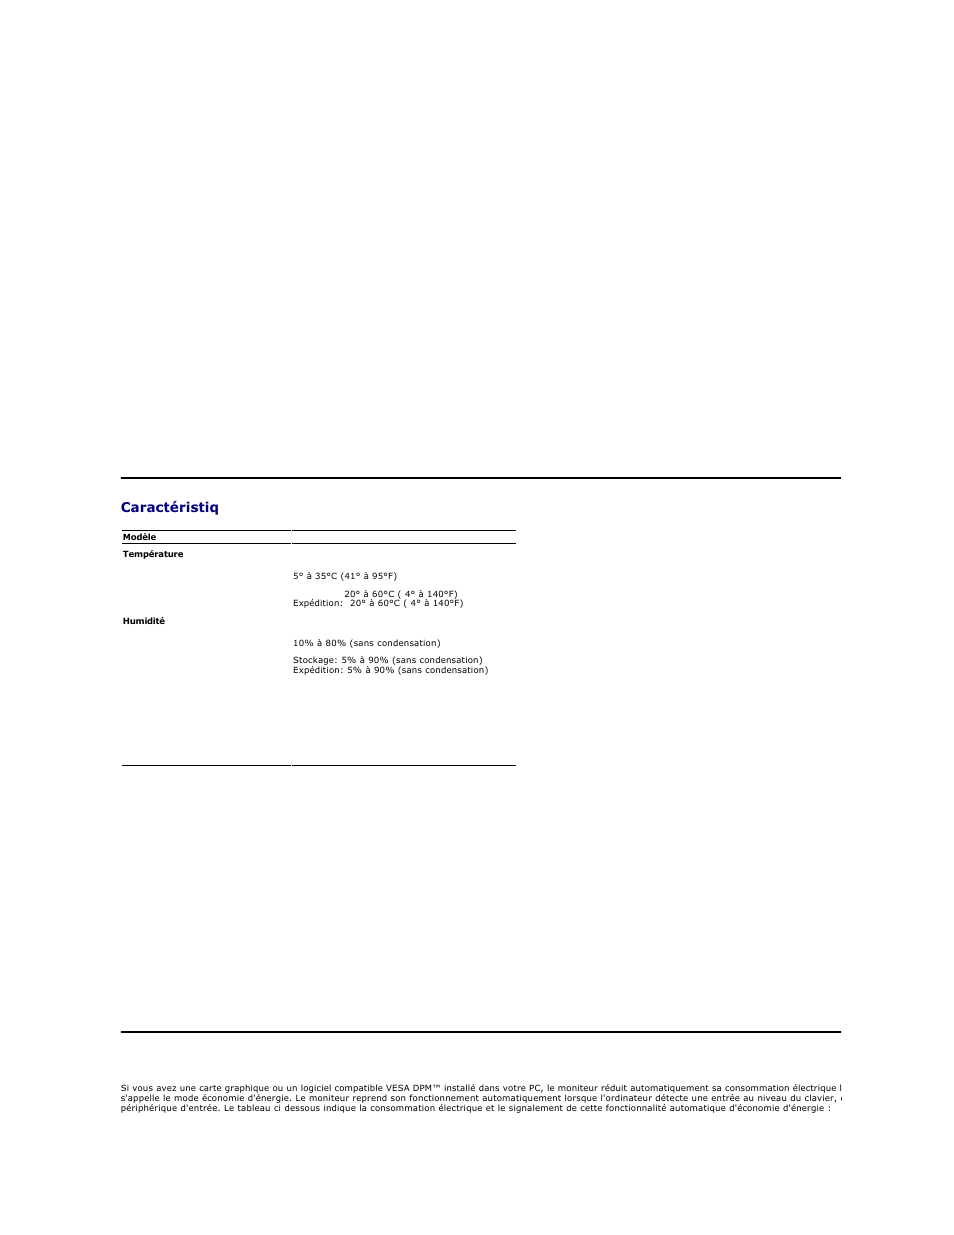 Caractéristiq ues environnementales, Modes de gestion d'energie | Dell AW2210 Monitor Manuel d'utilisation | Page 8 / 31